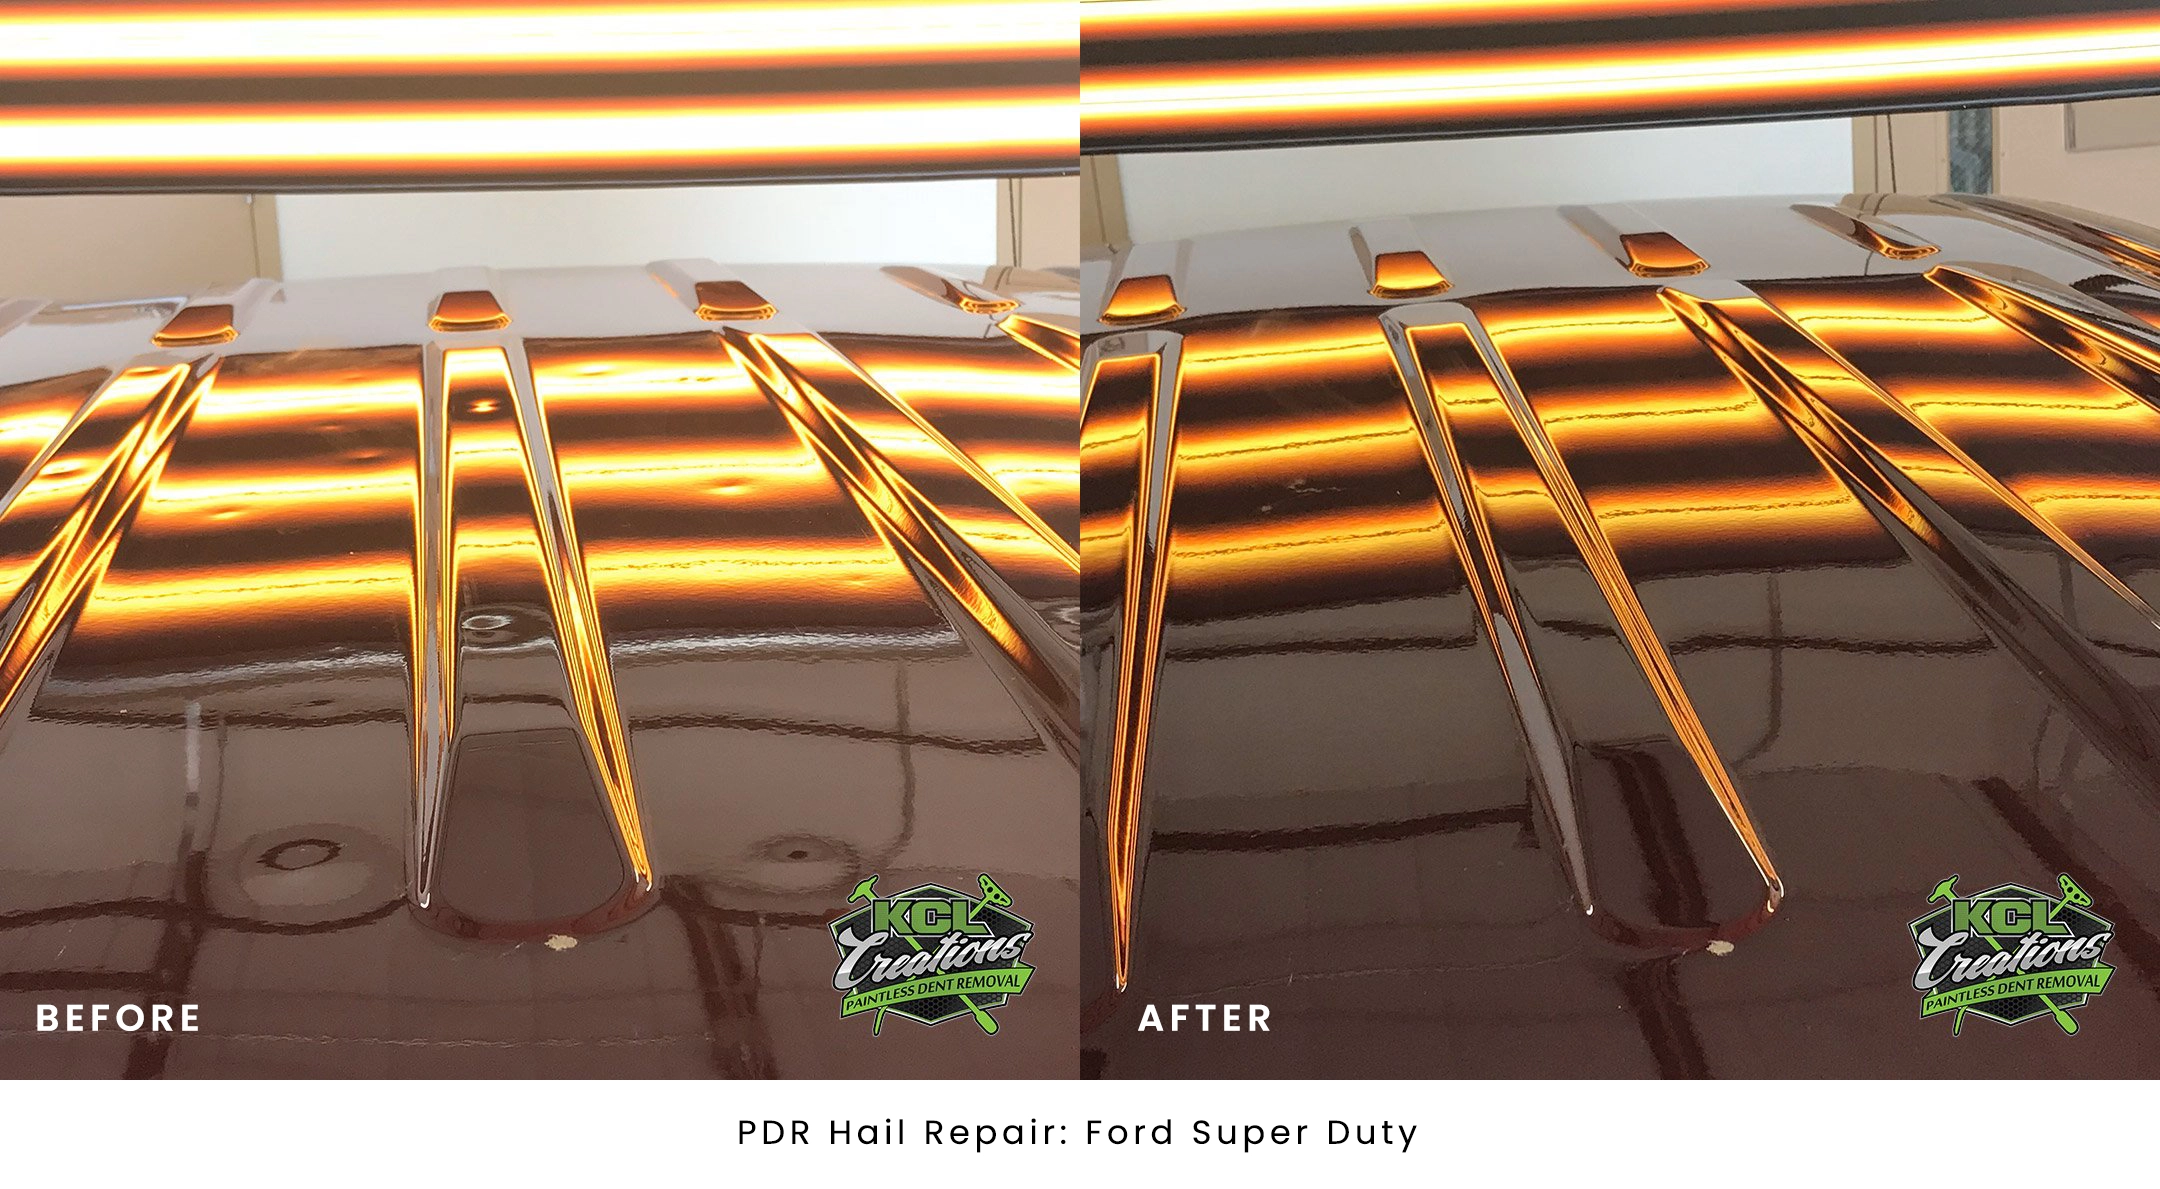 PDR Hail Repair Ford Super Duty